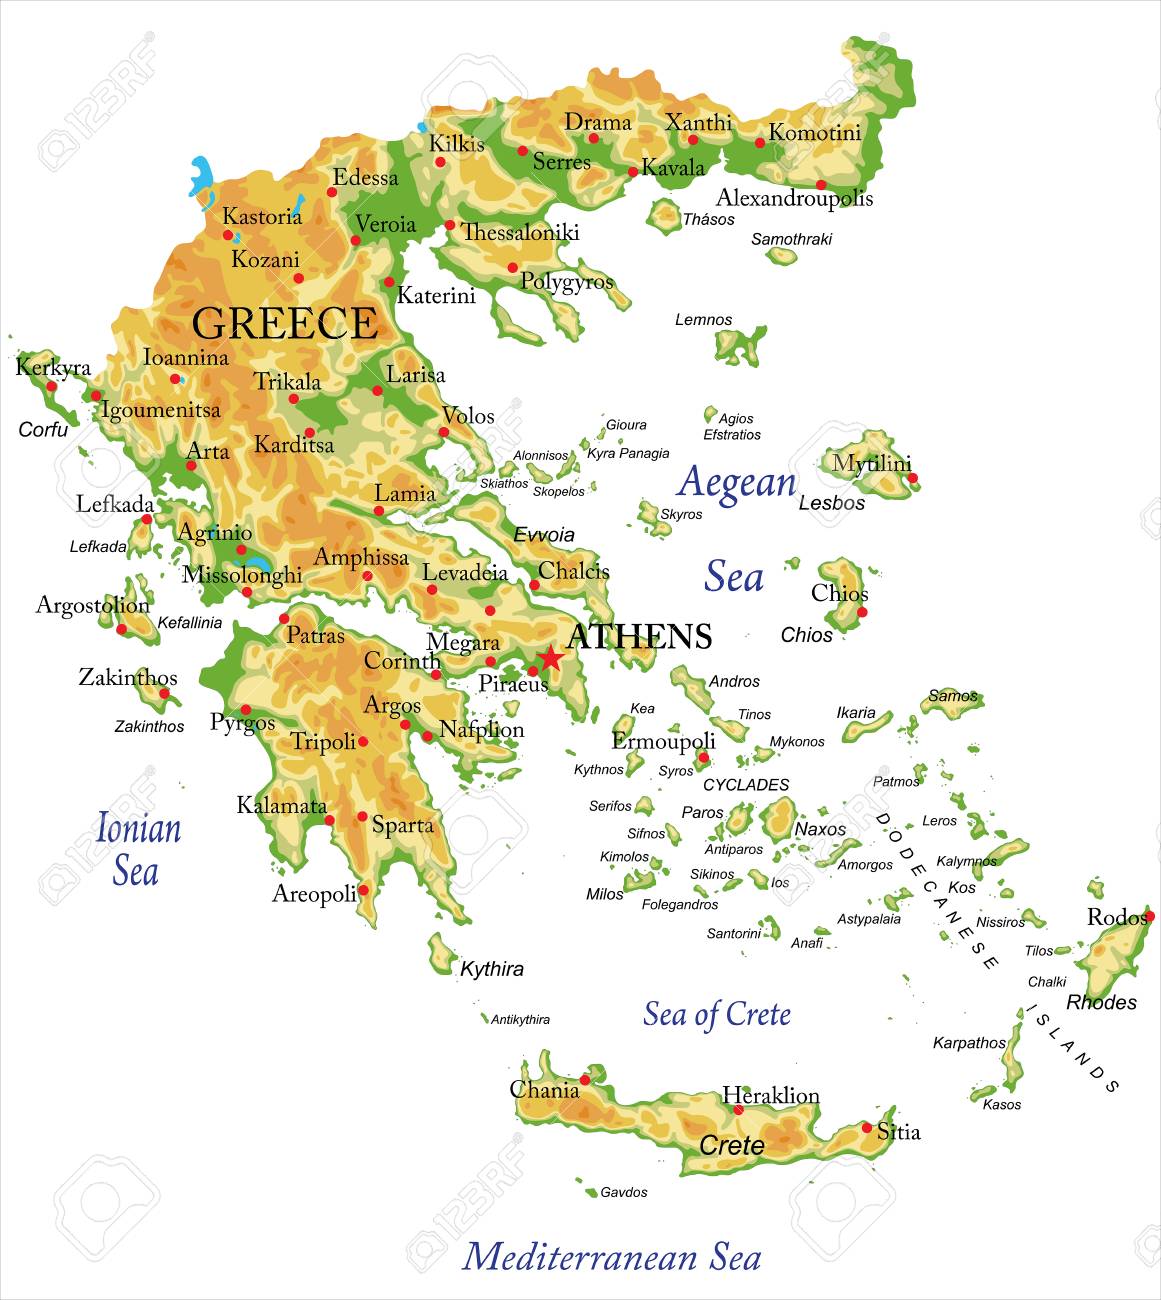 Geologocké zobrazení řecka